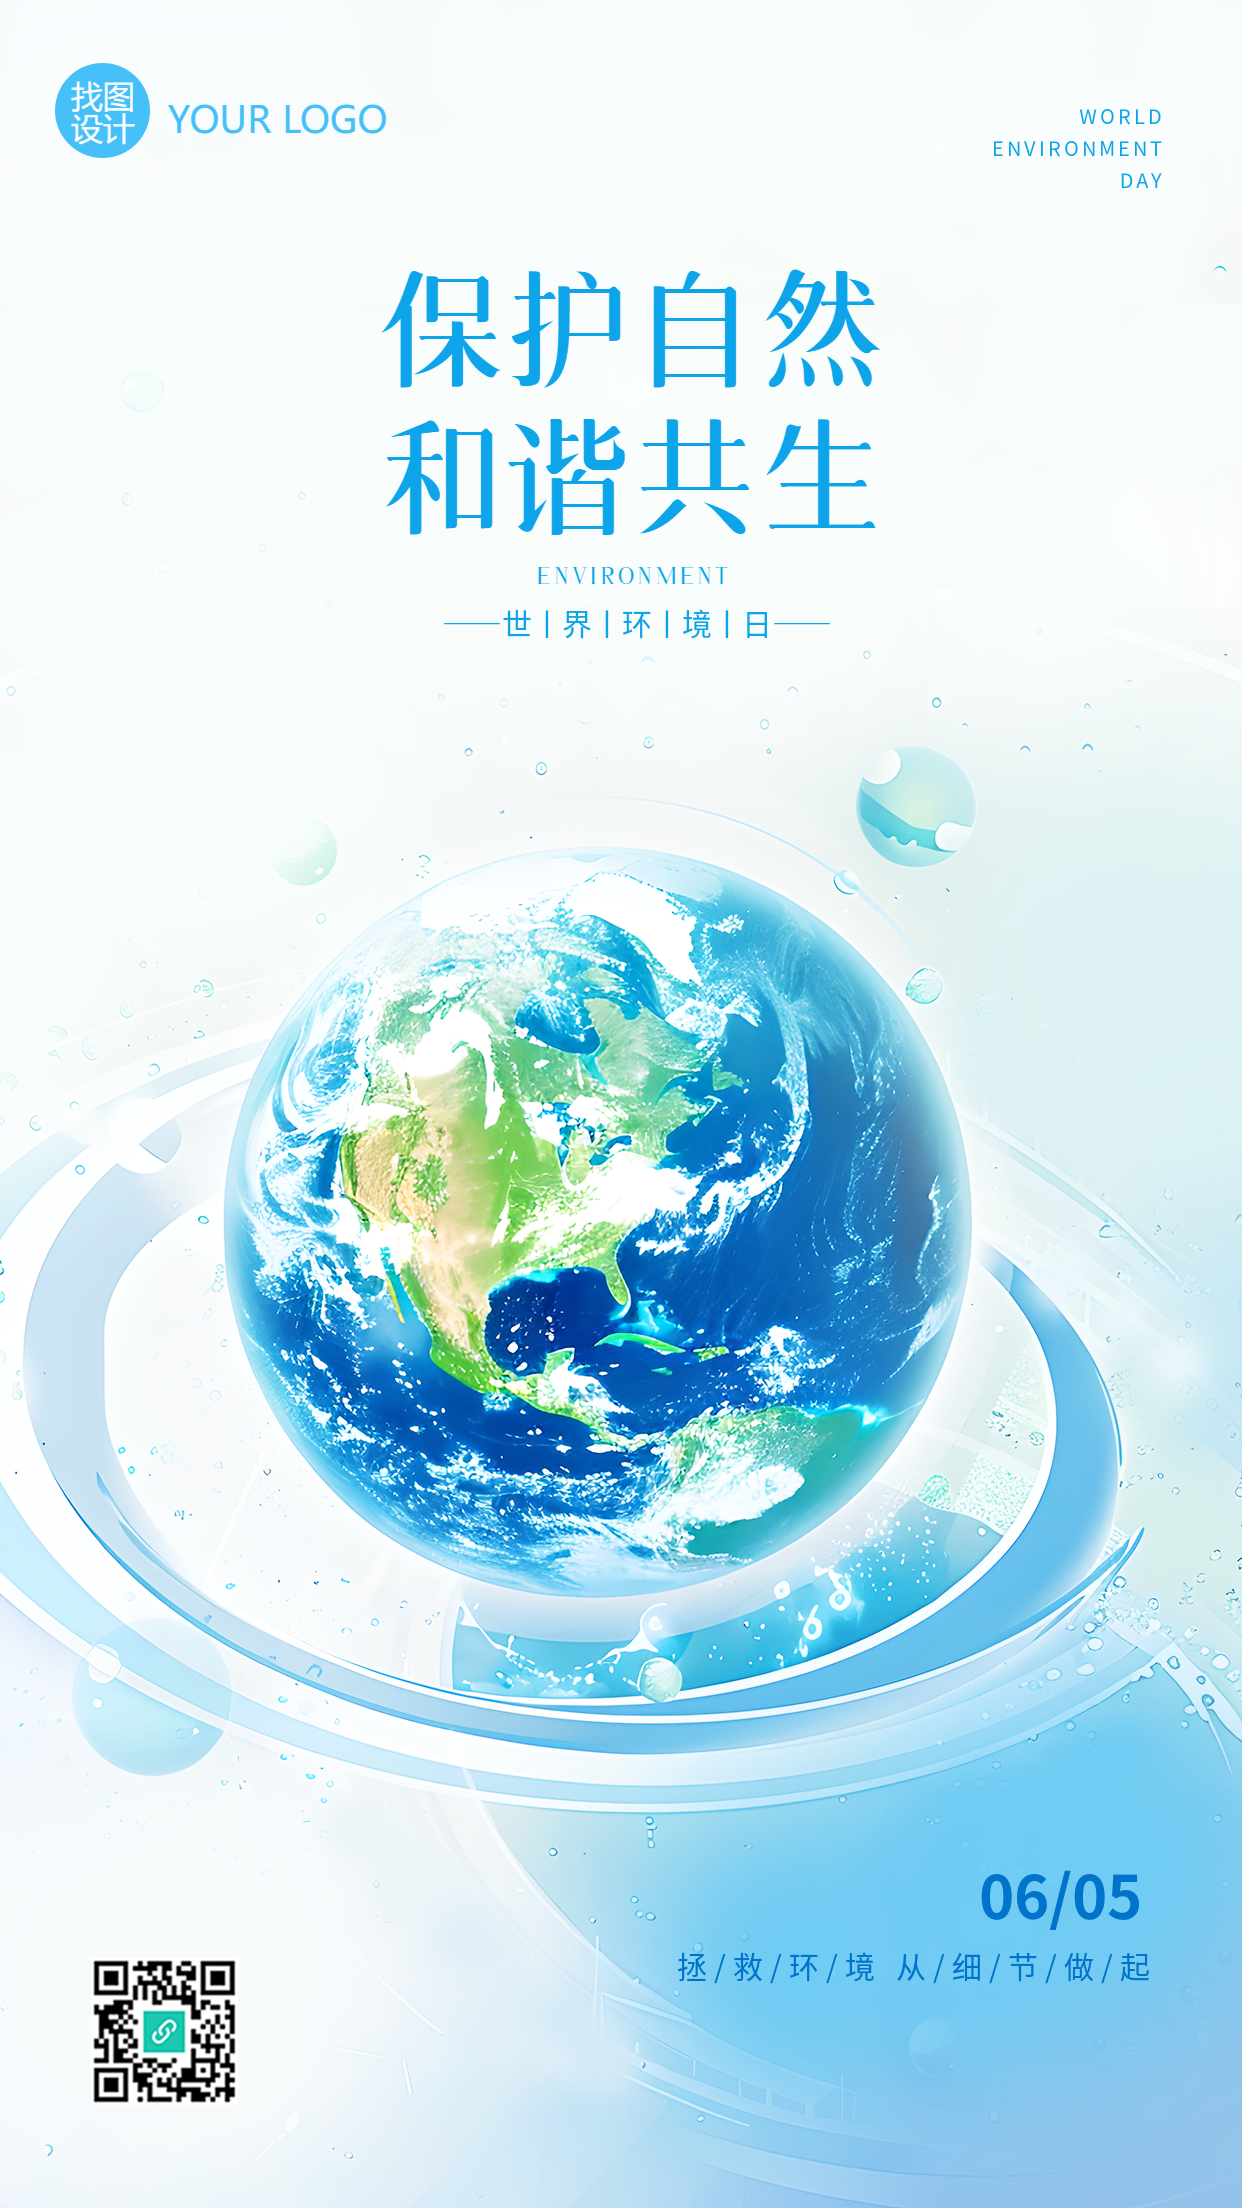 6月5日世界环境日简约手机海报